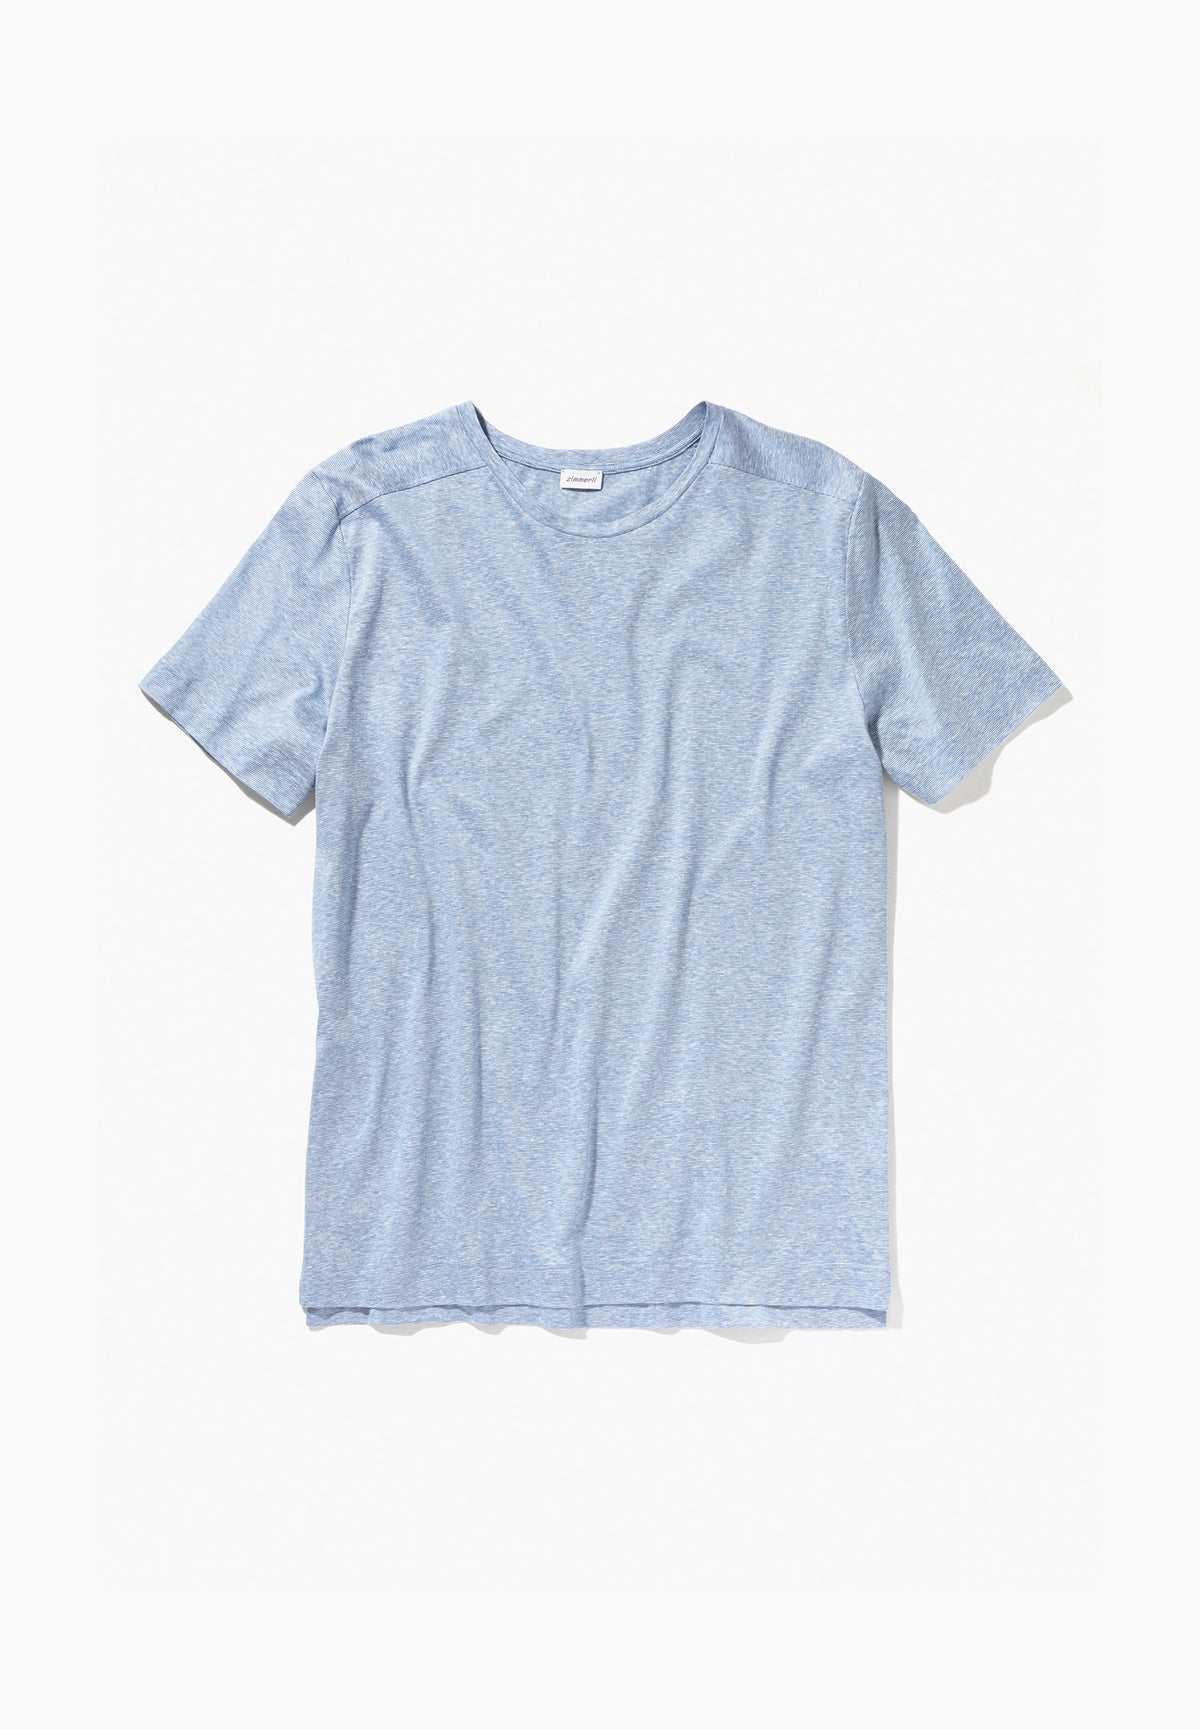 Cotton/Linen Stripes | T-Shirt Short Sleeve - light blue